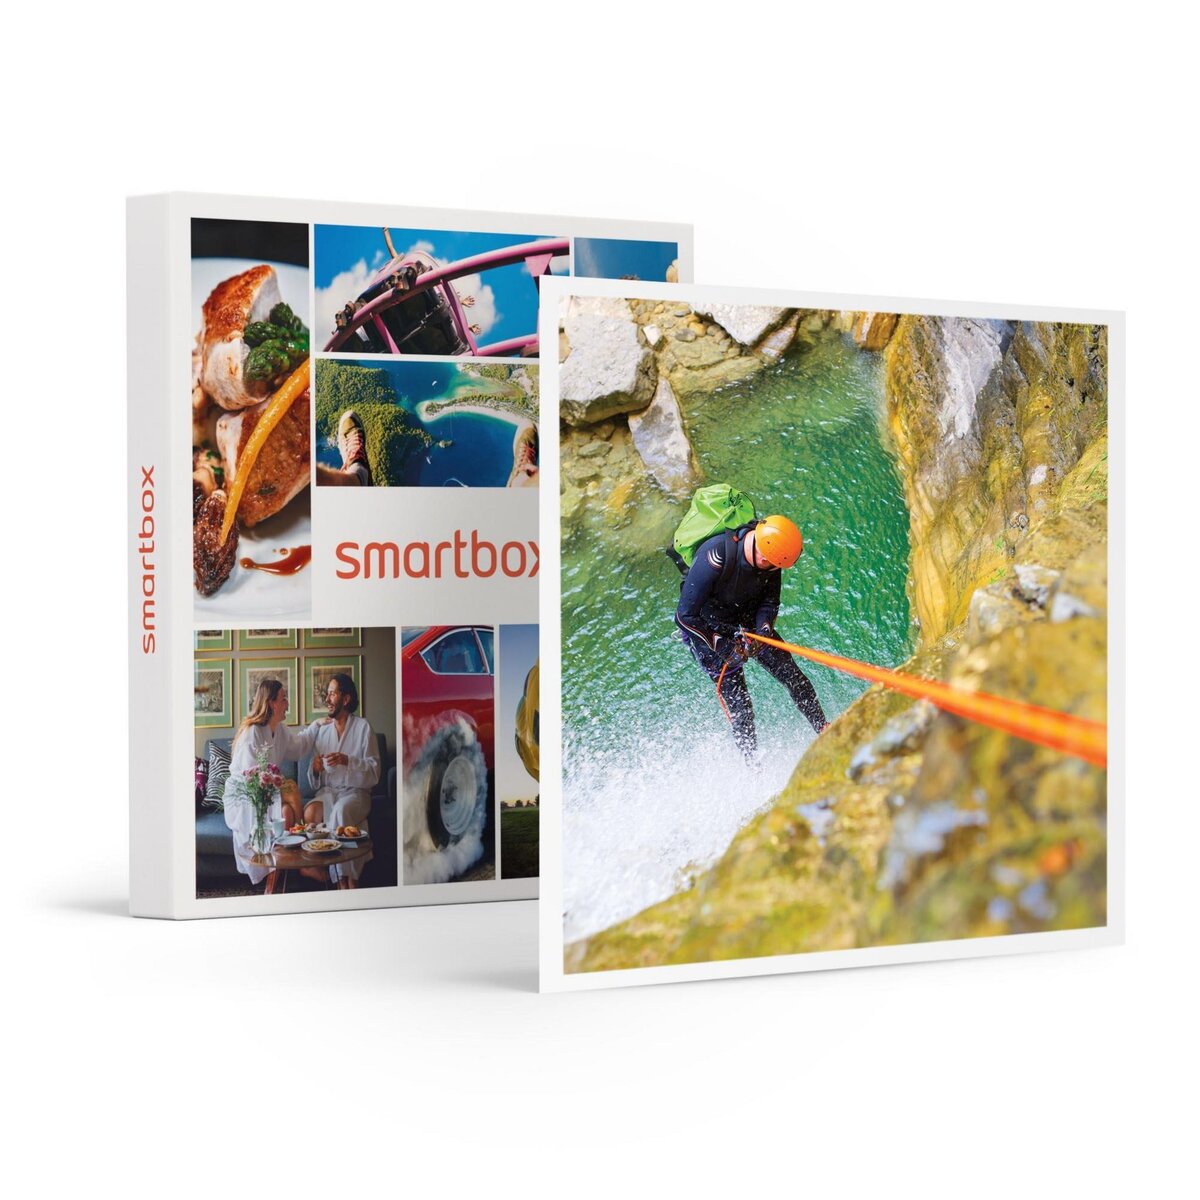 Smartbox Activité sensationnelle aquatique en solo ou en groupe - Coffret Cadeau Sport & Aventure